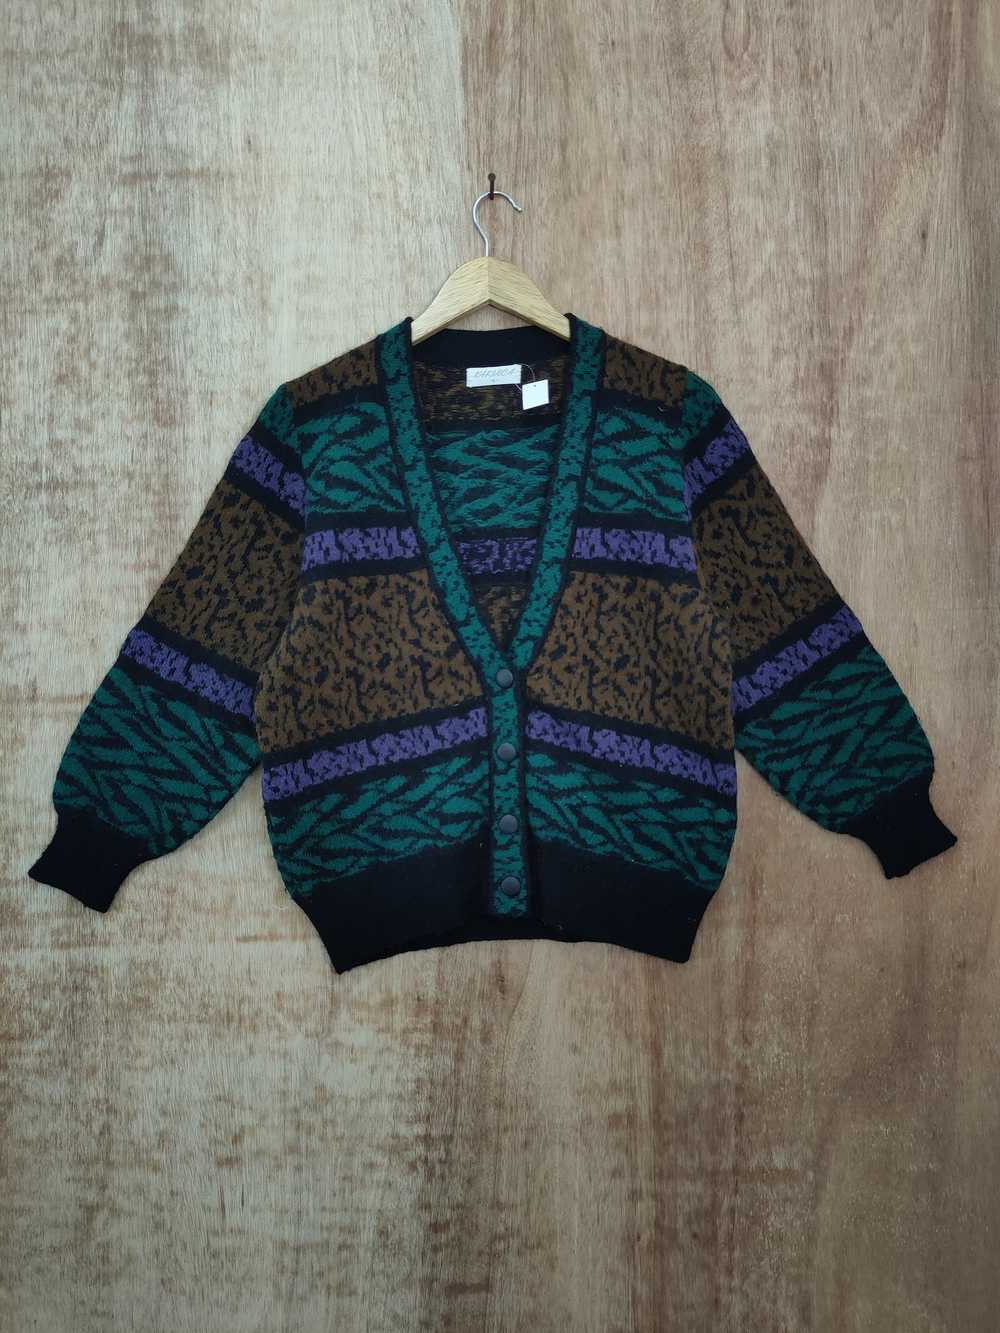 Aran Isles Knitwear × Art × Japanese Brand Karinc… - image 1